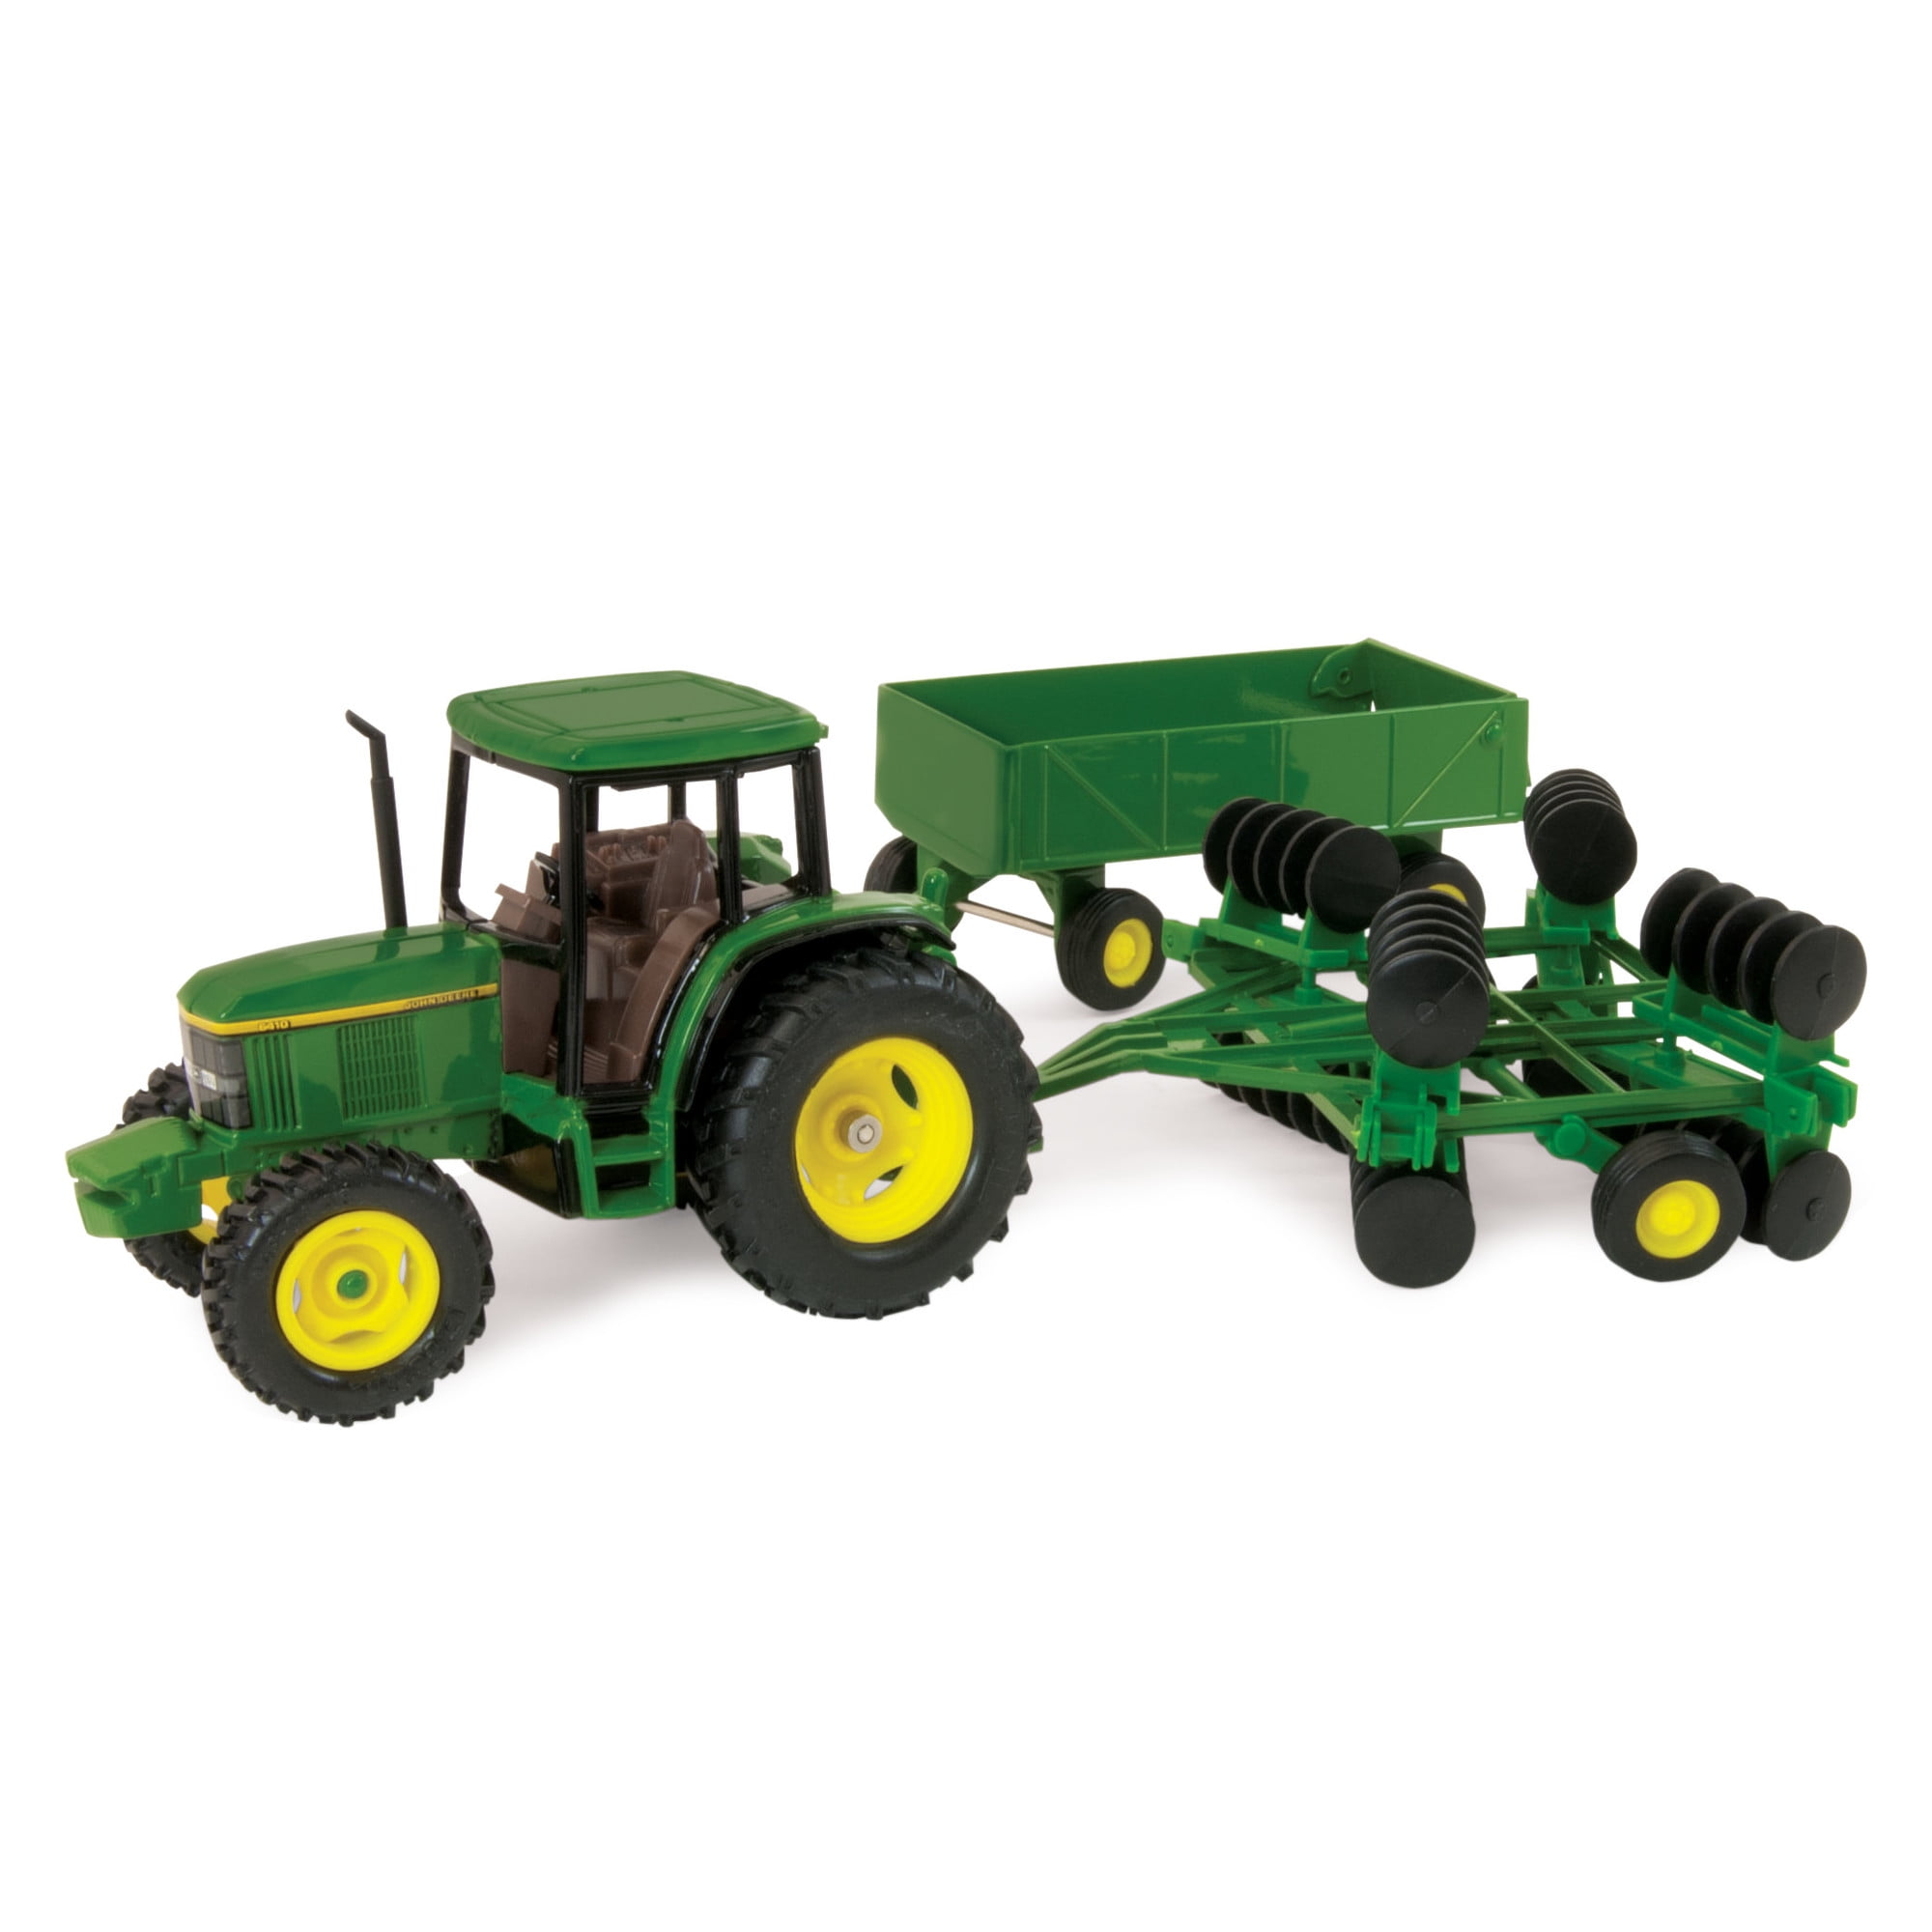 68212 Combine w/Head,Tractor w/Grain Cart 1/32 NEW John Deere Harvesting Set 